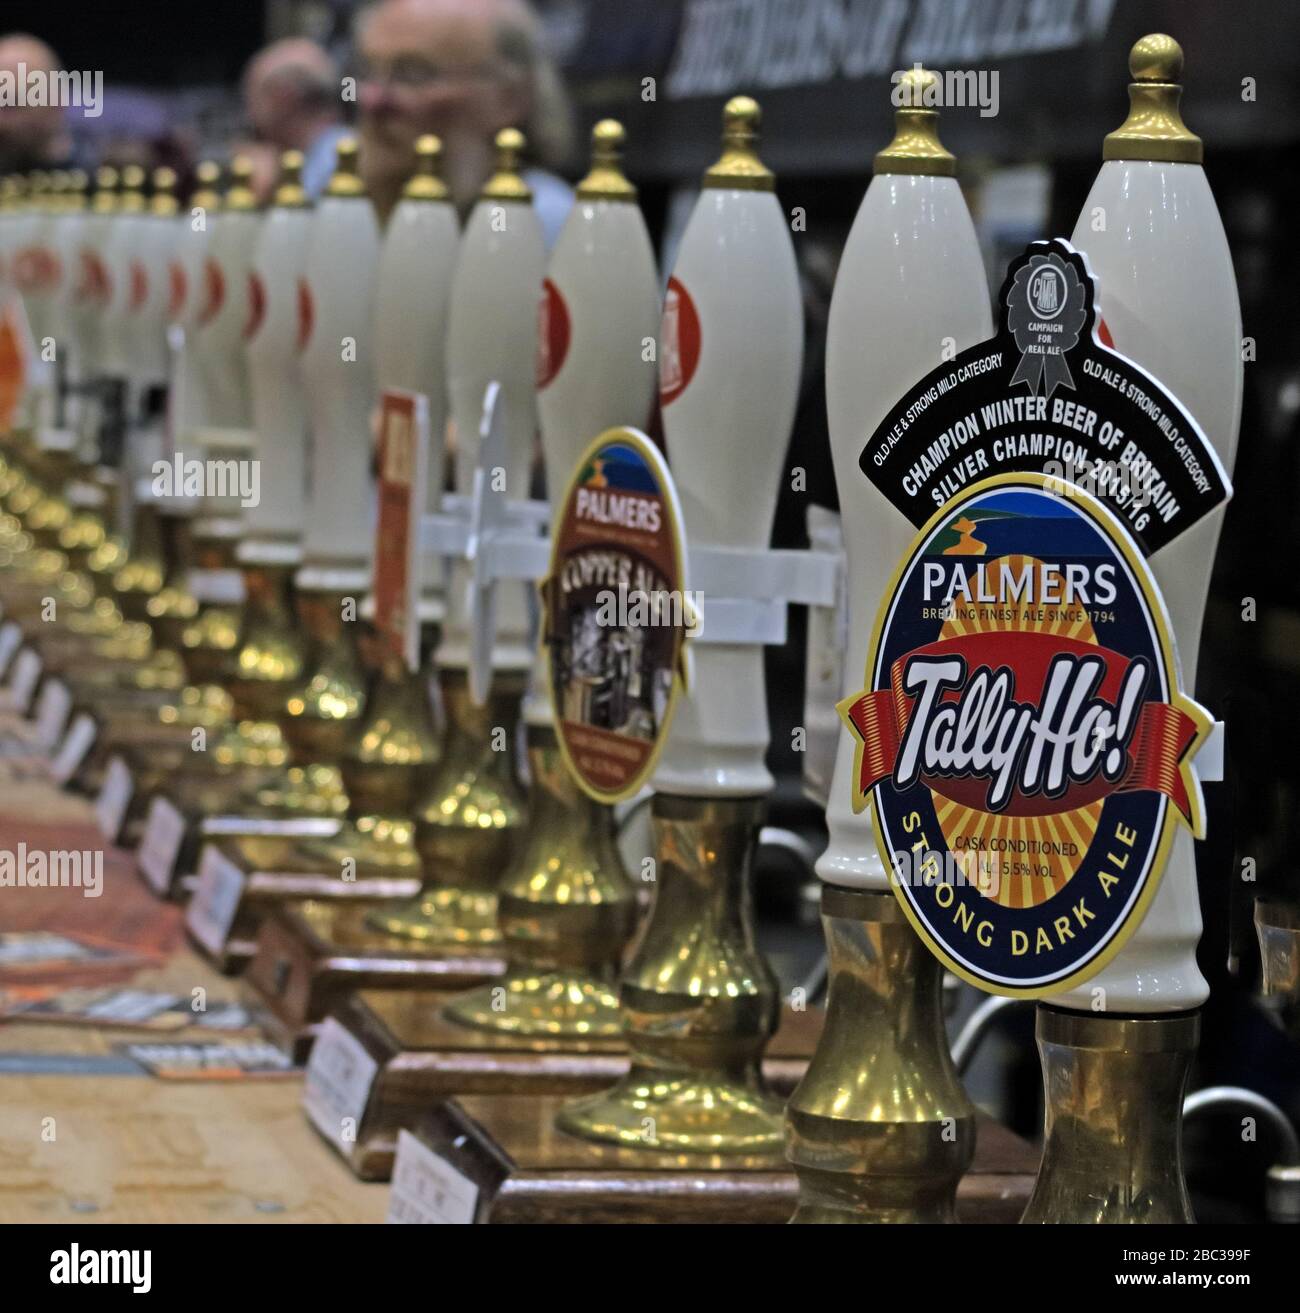 Tally ho, strong Dark Ale, campione della birra invernale britannica, al Manchester Beer Festival, nel centro di Manchester 2017 Foto Stock